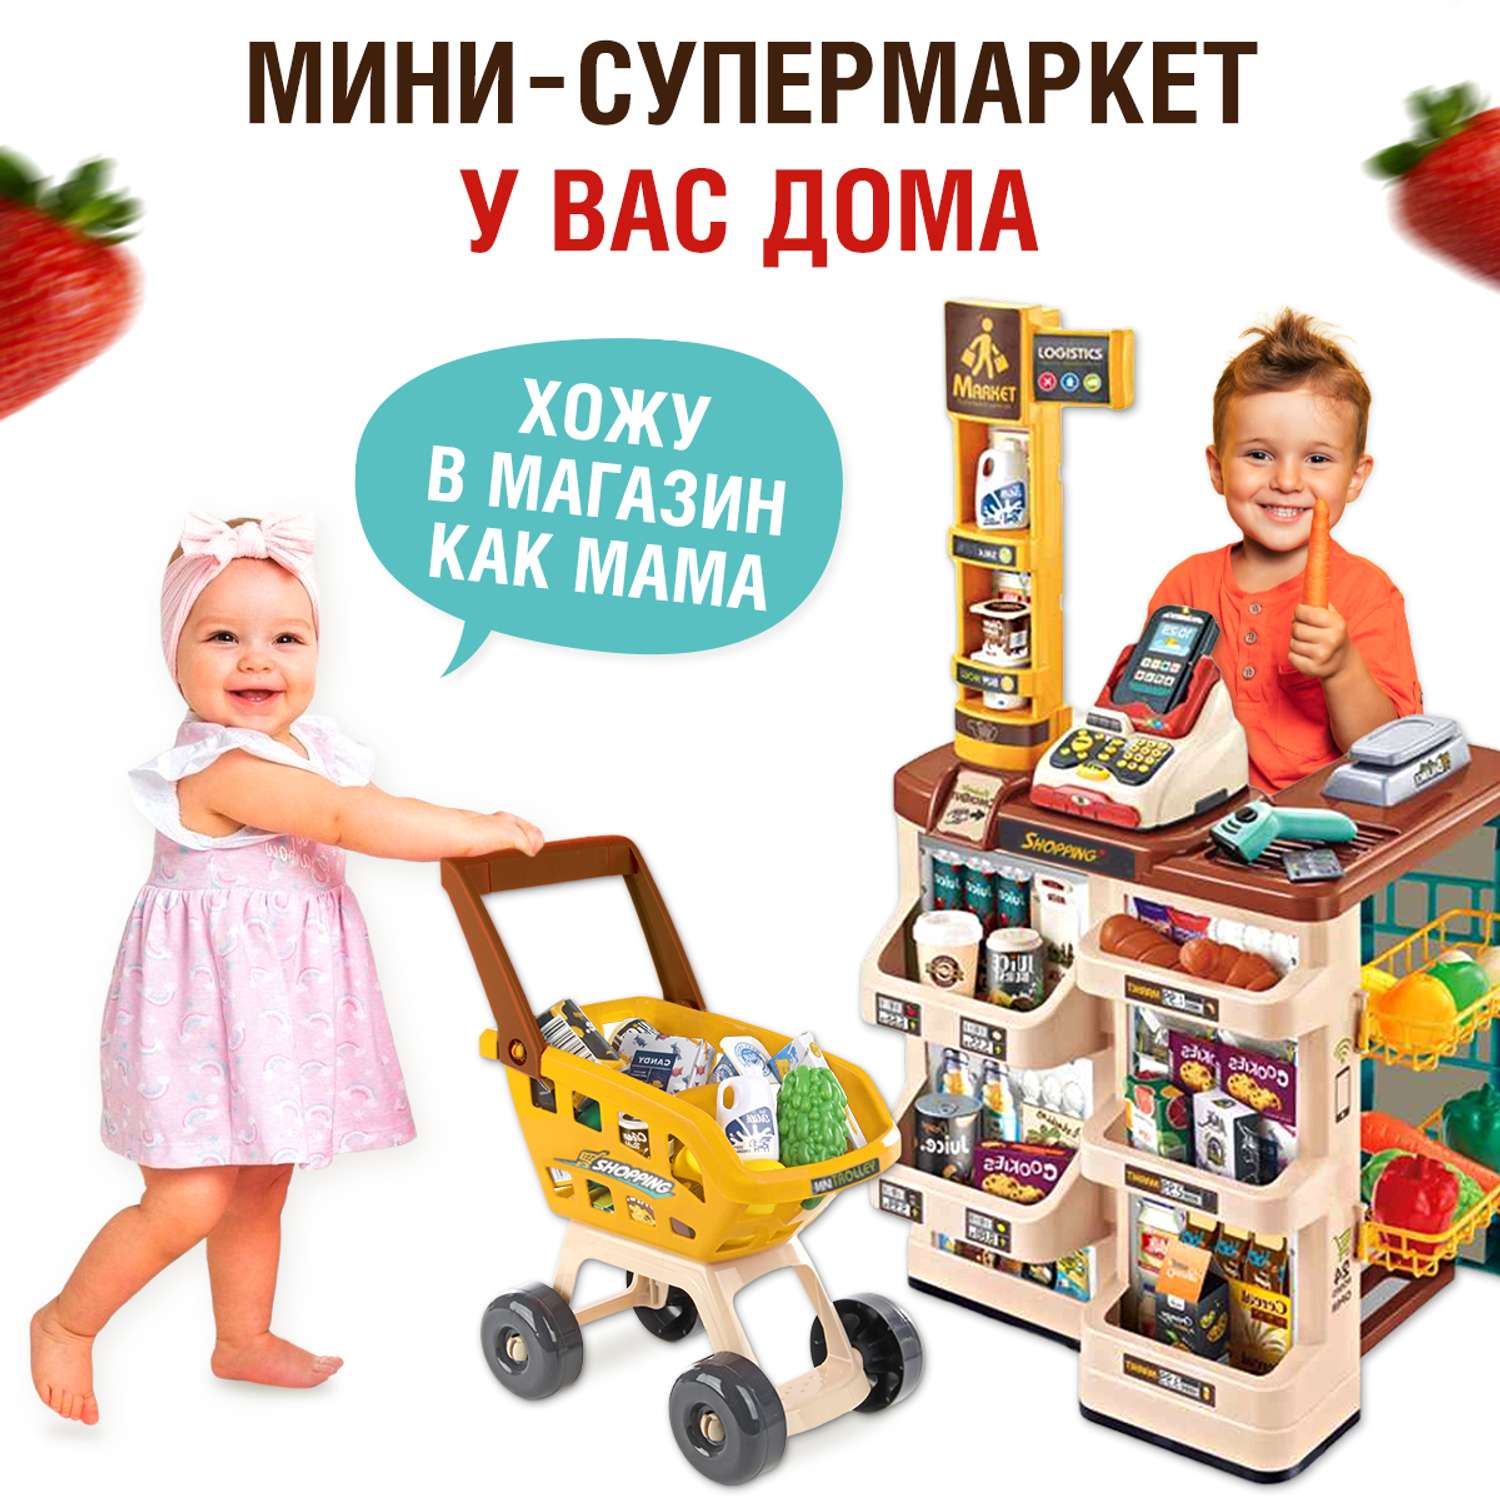 Супермаркет детский FAIRYMARY игрушечный со звуком и светом - фото 4